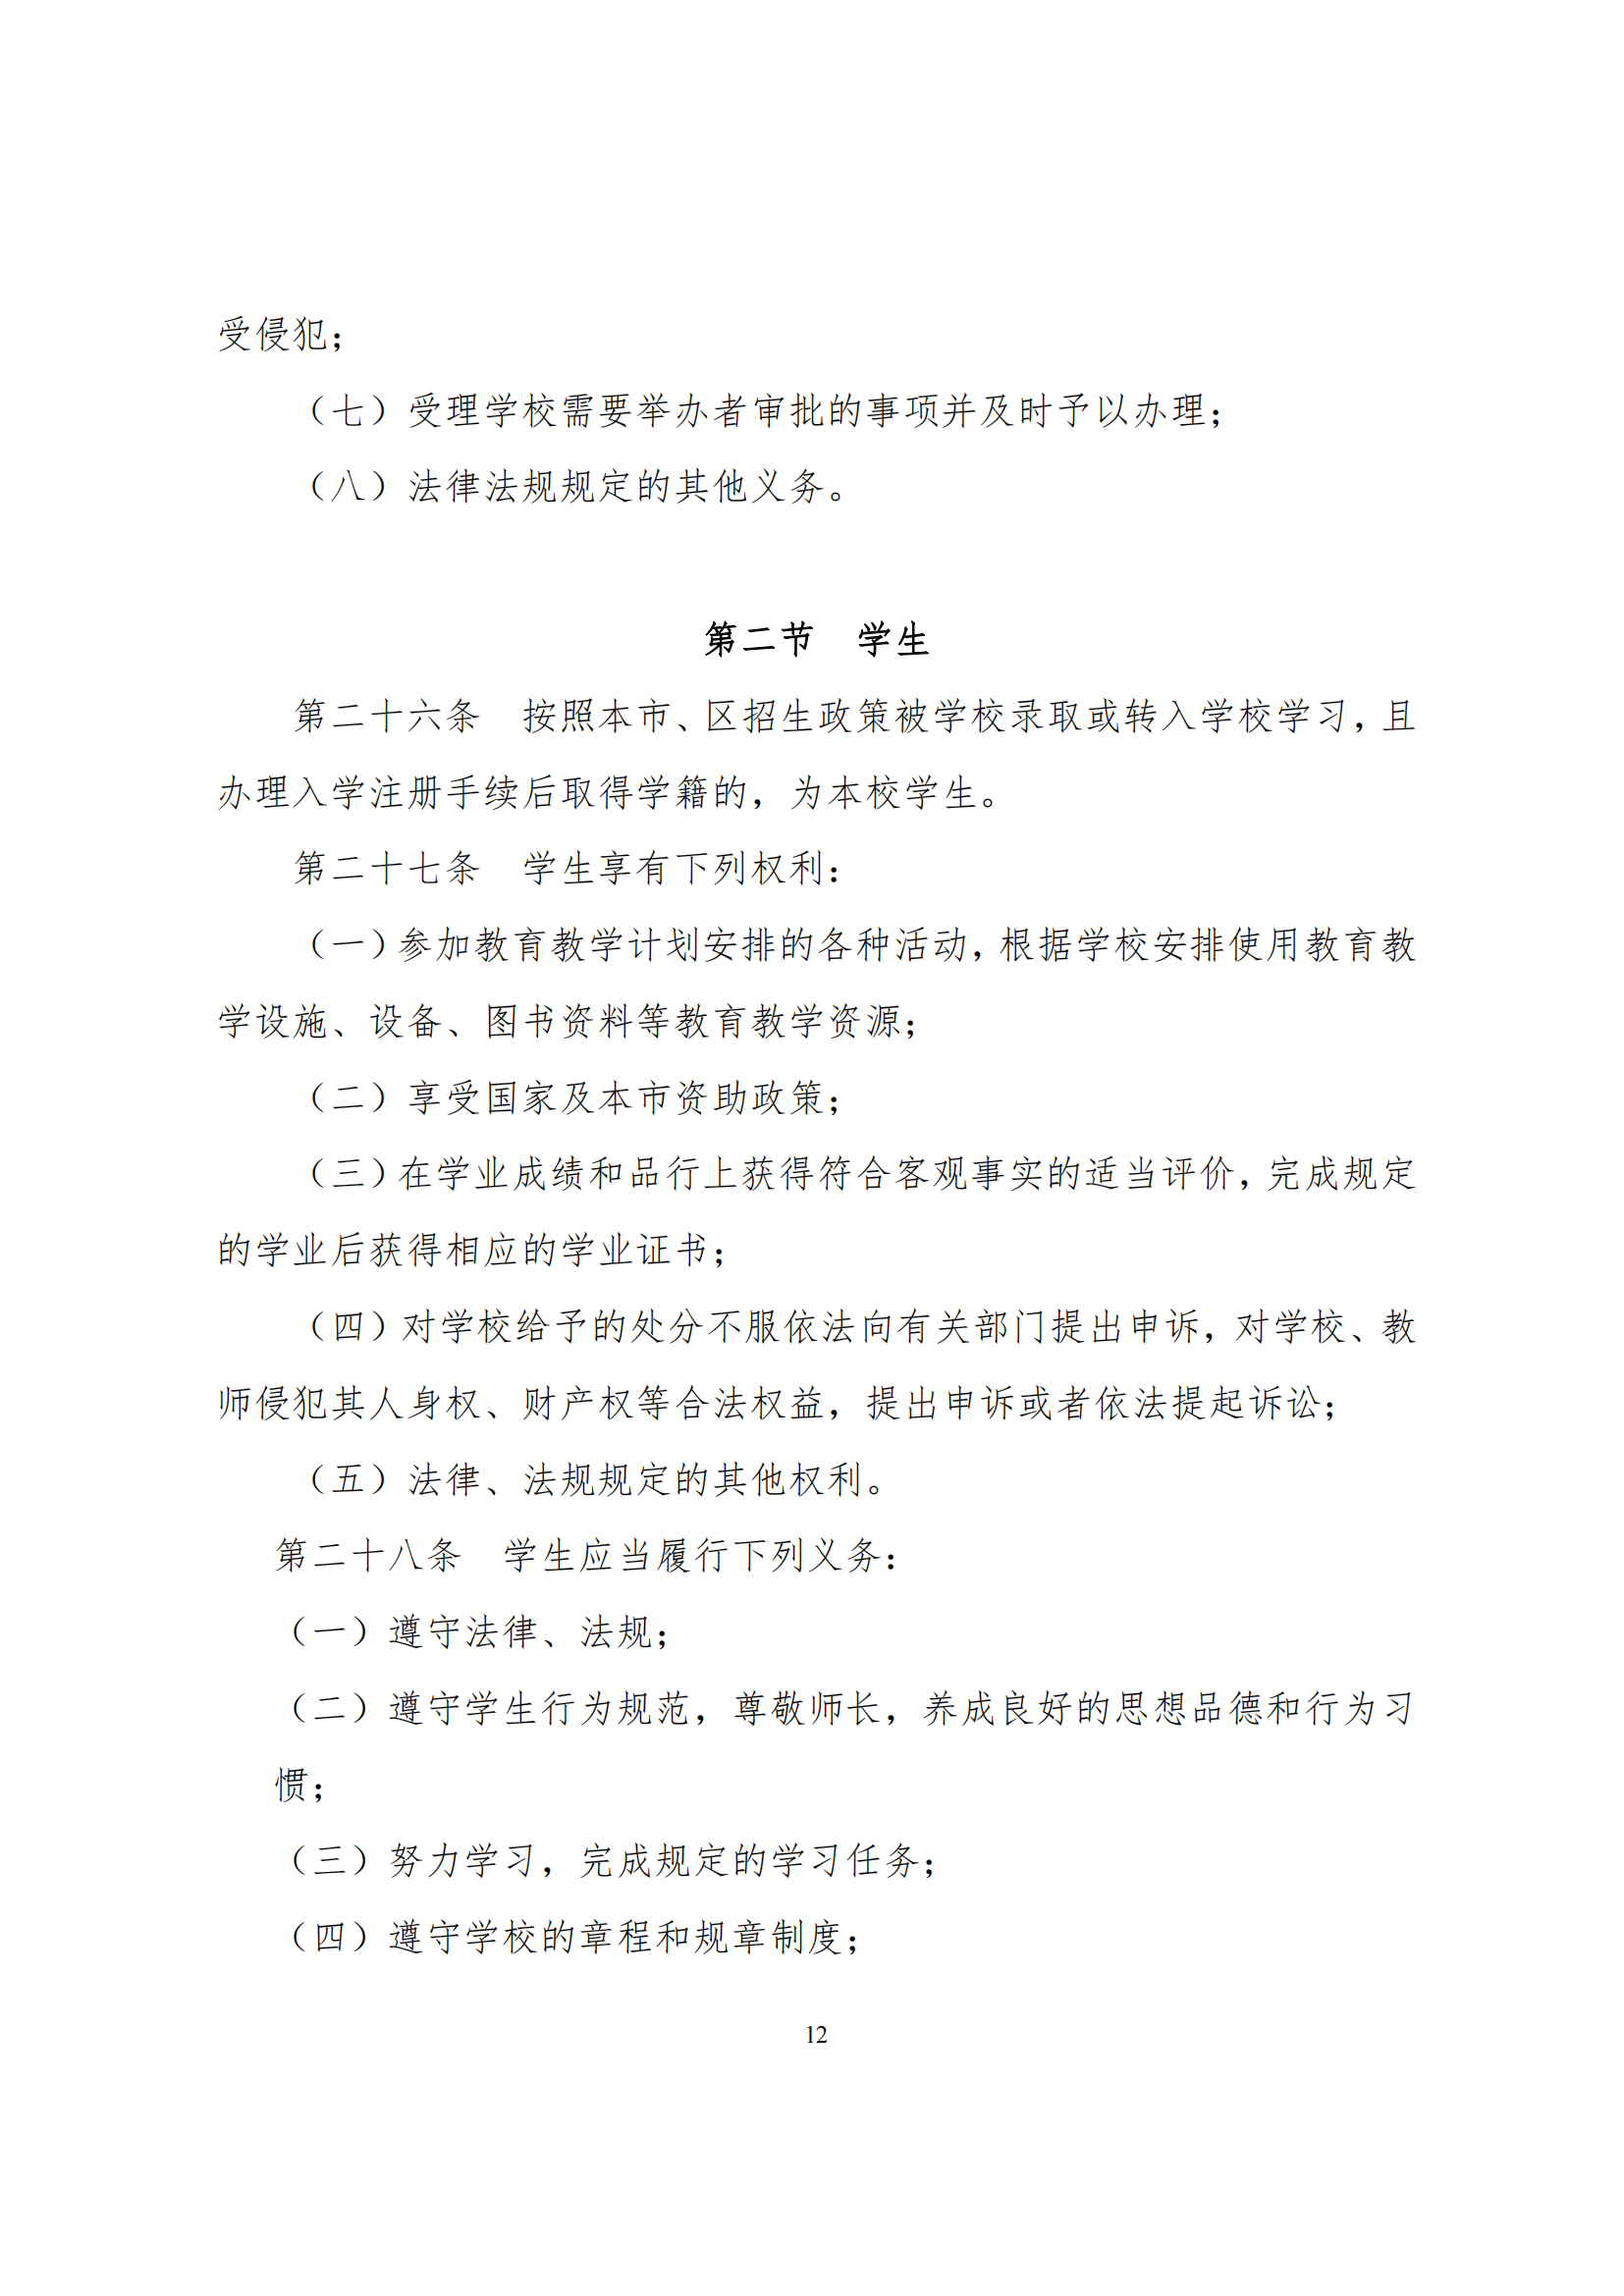 上海市徐汇区求知小学学校章程（提交稿）_11.png